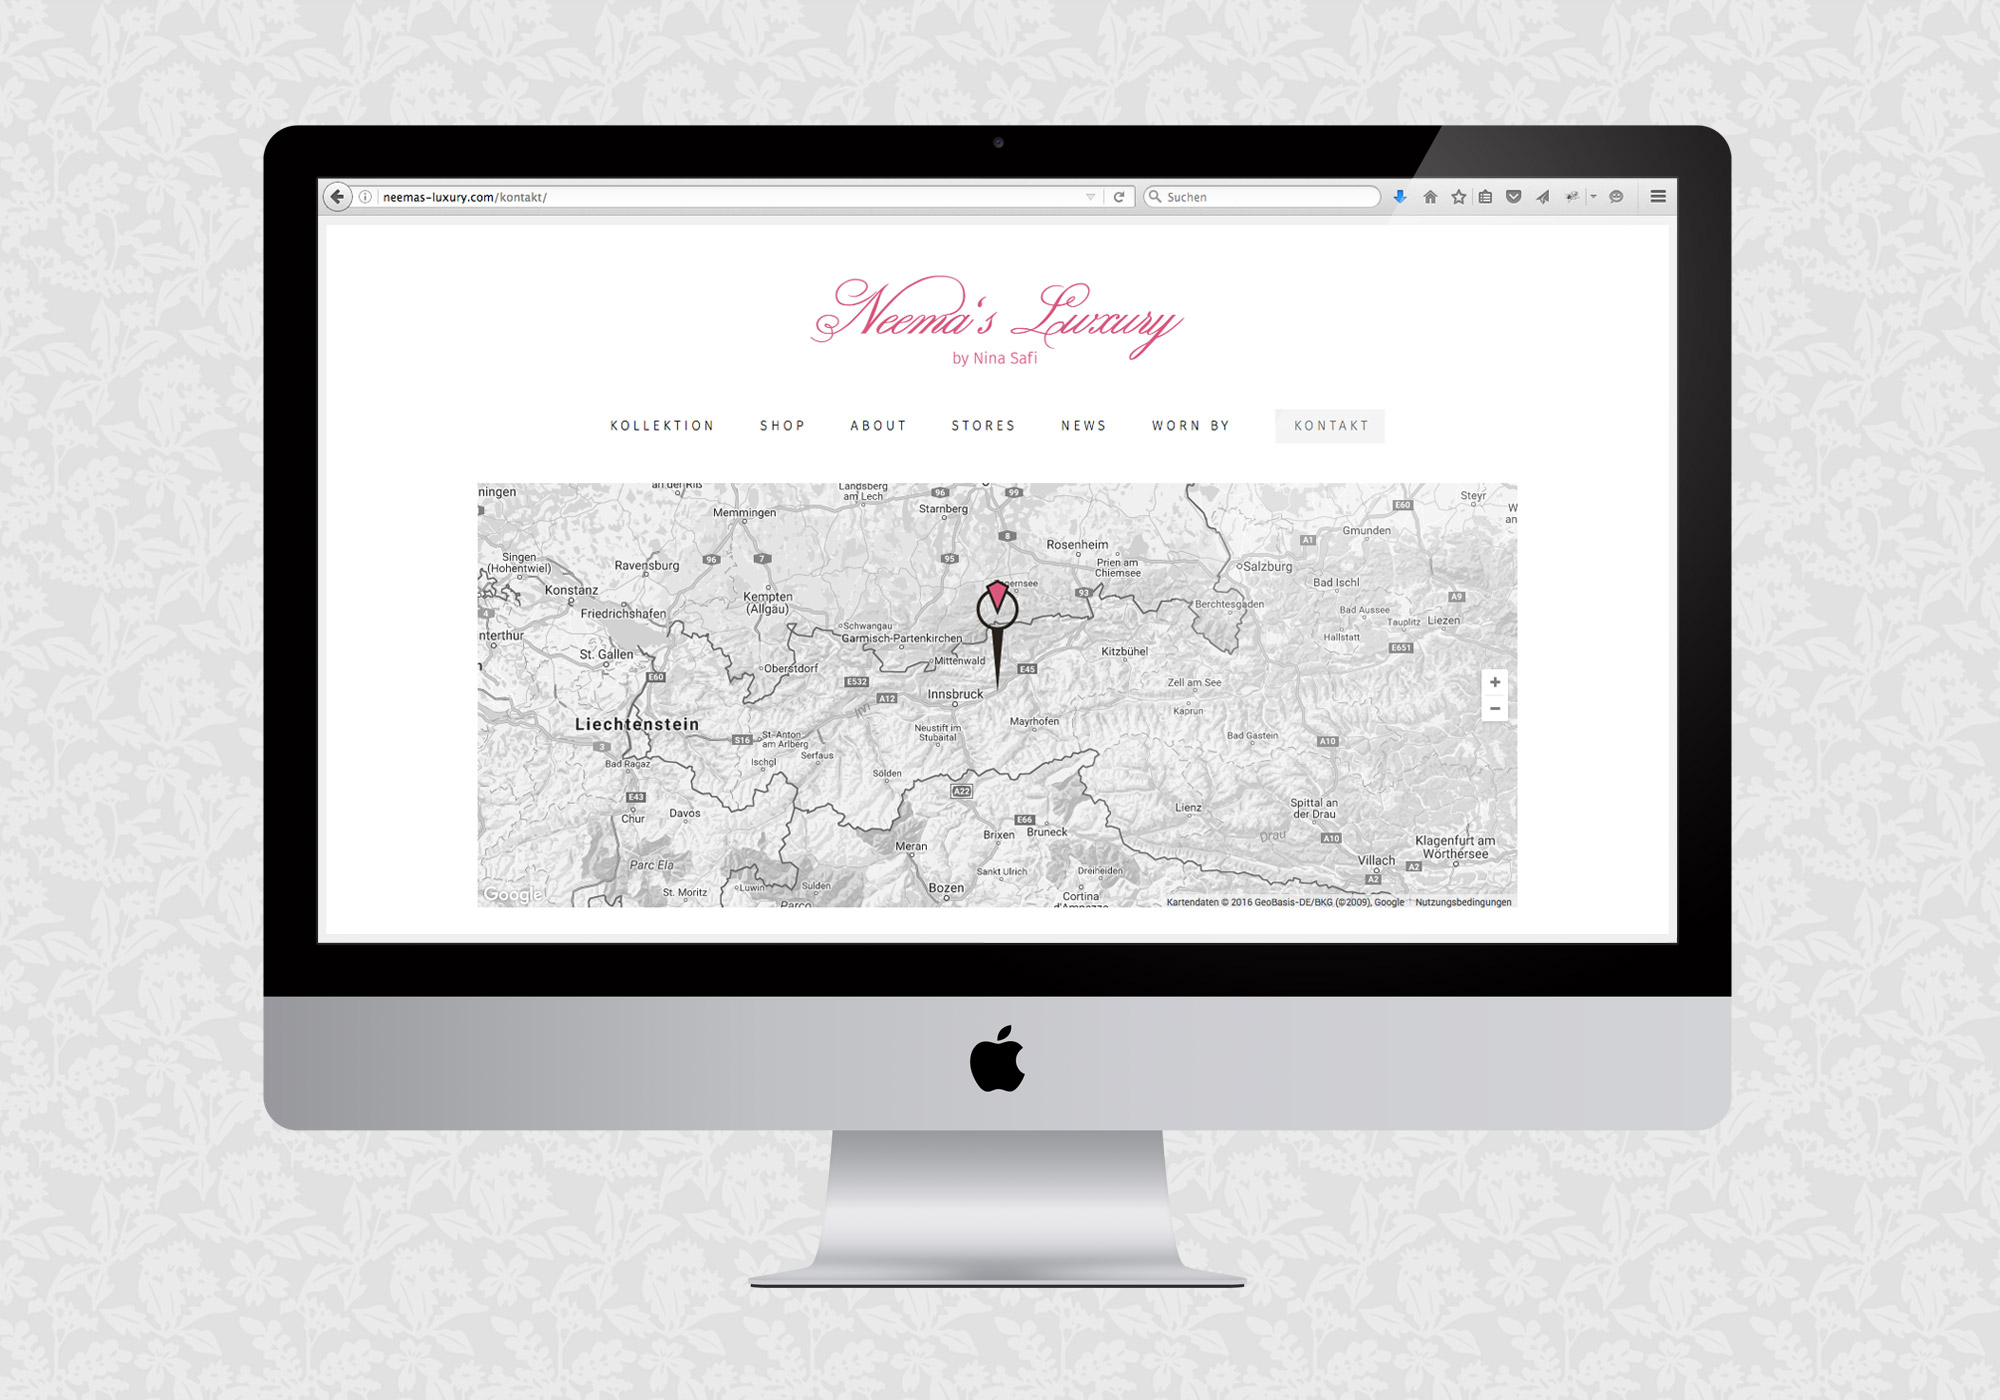 Website für Neema’s Luxury